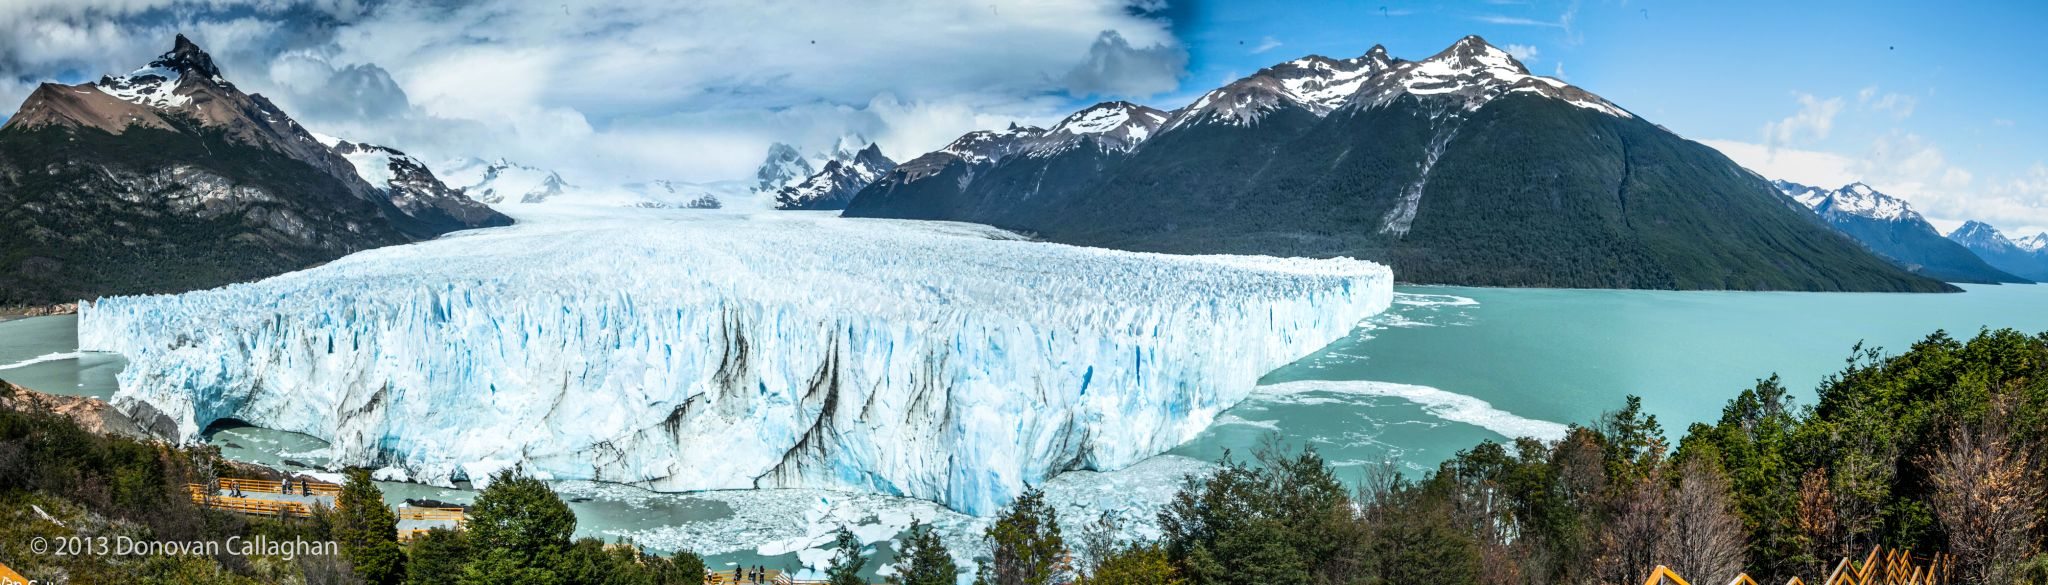 El Calafate, Argentina - Los Glaciares National Park